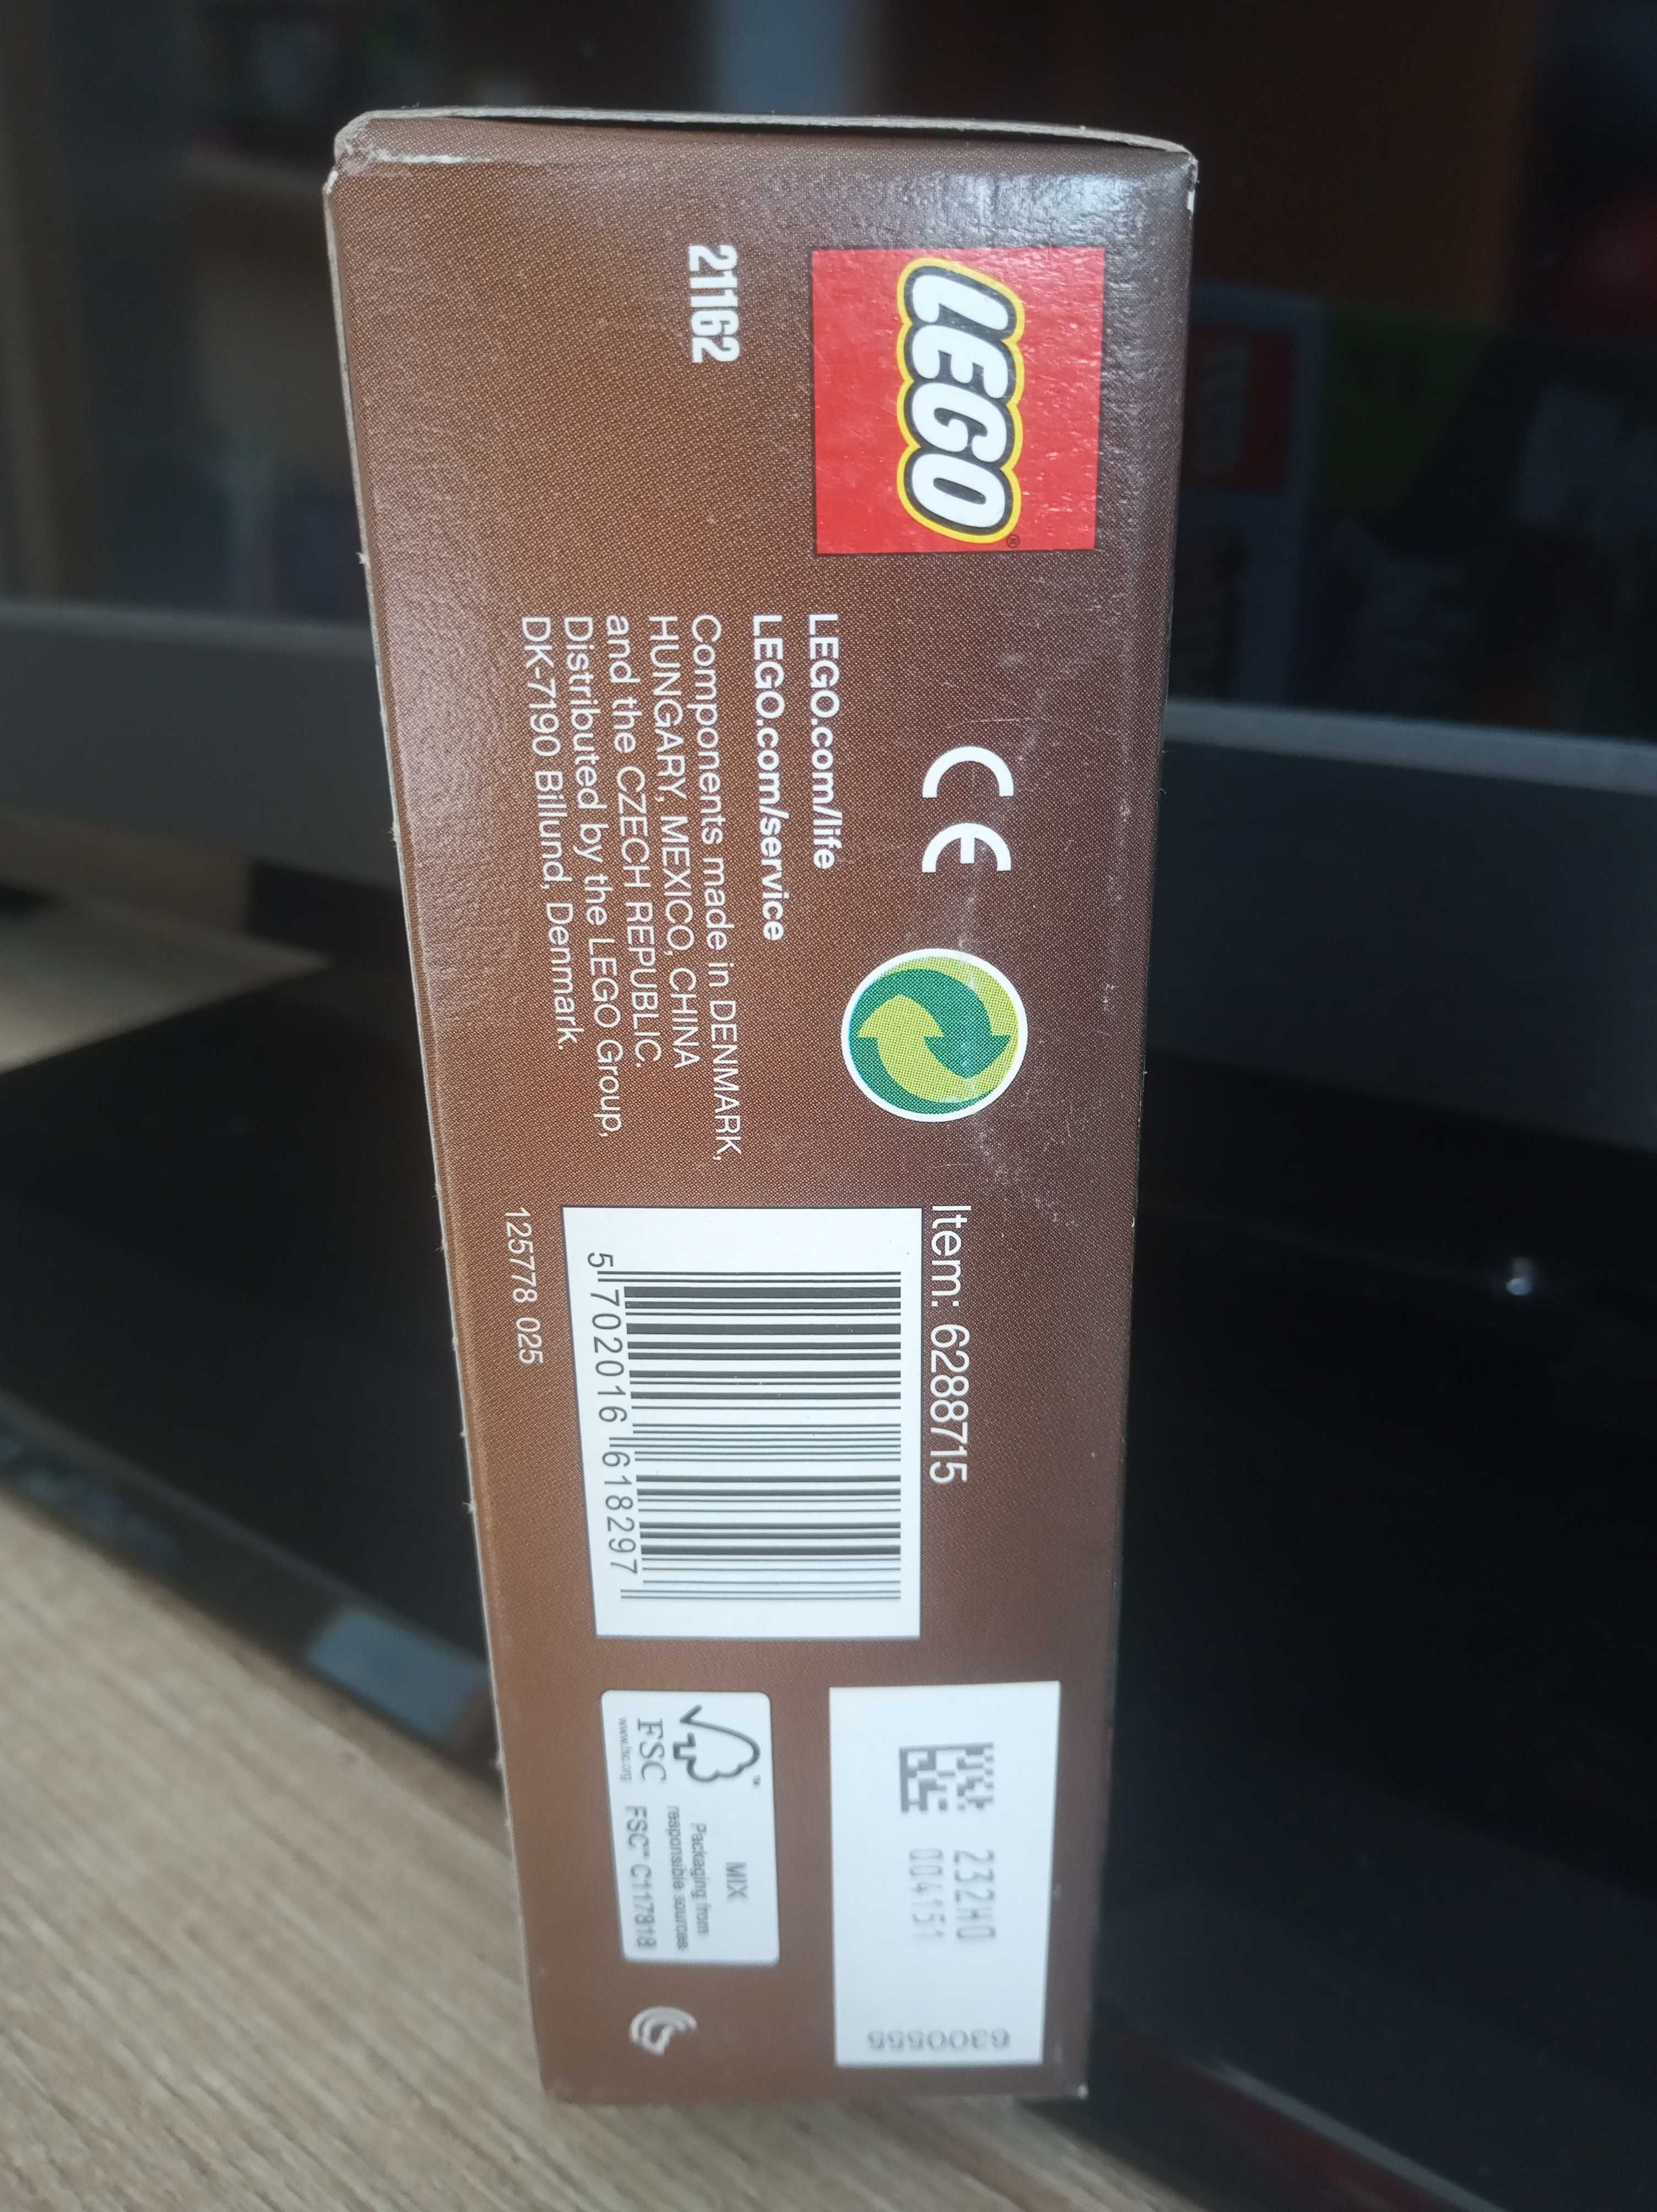 Lego MINECRAFT  nr 21162  Przygoda  w tajdze - Nowe nie otwierane